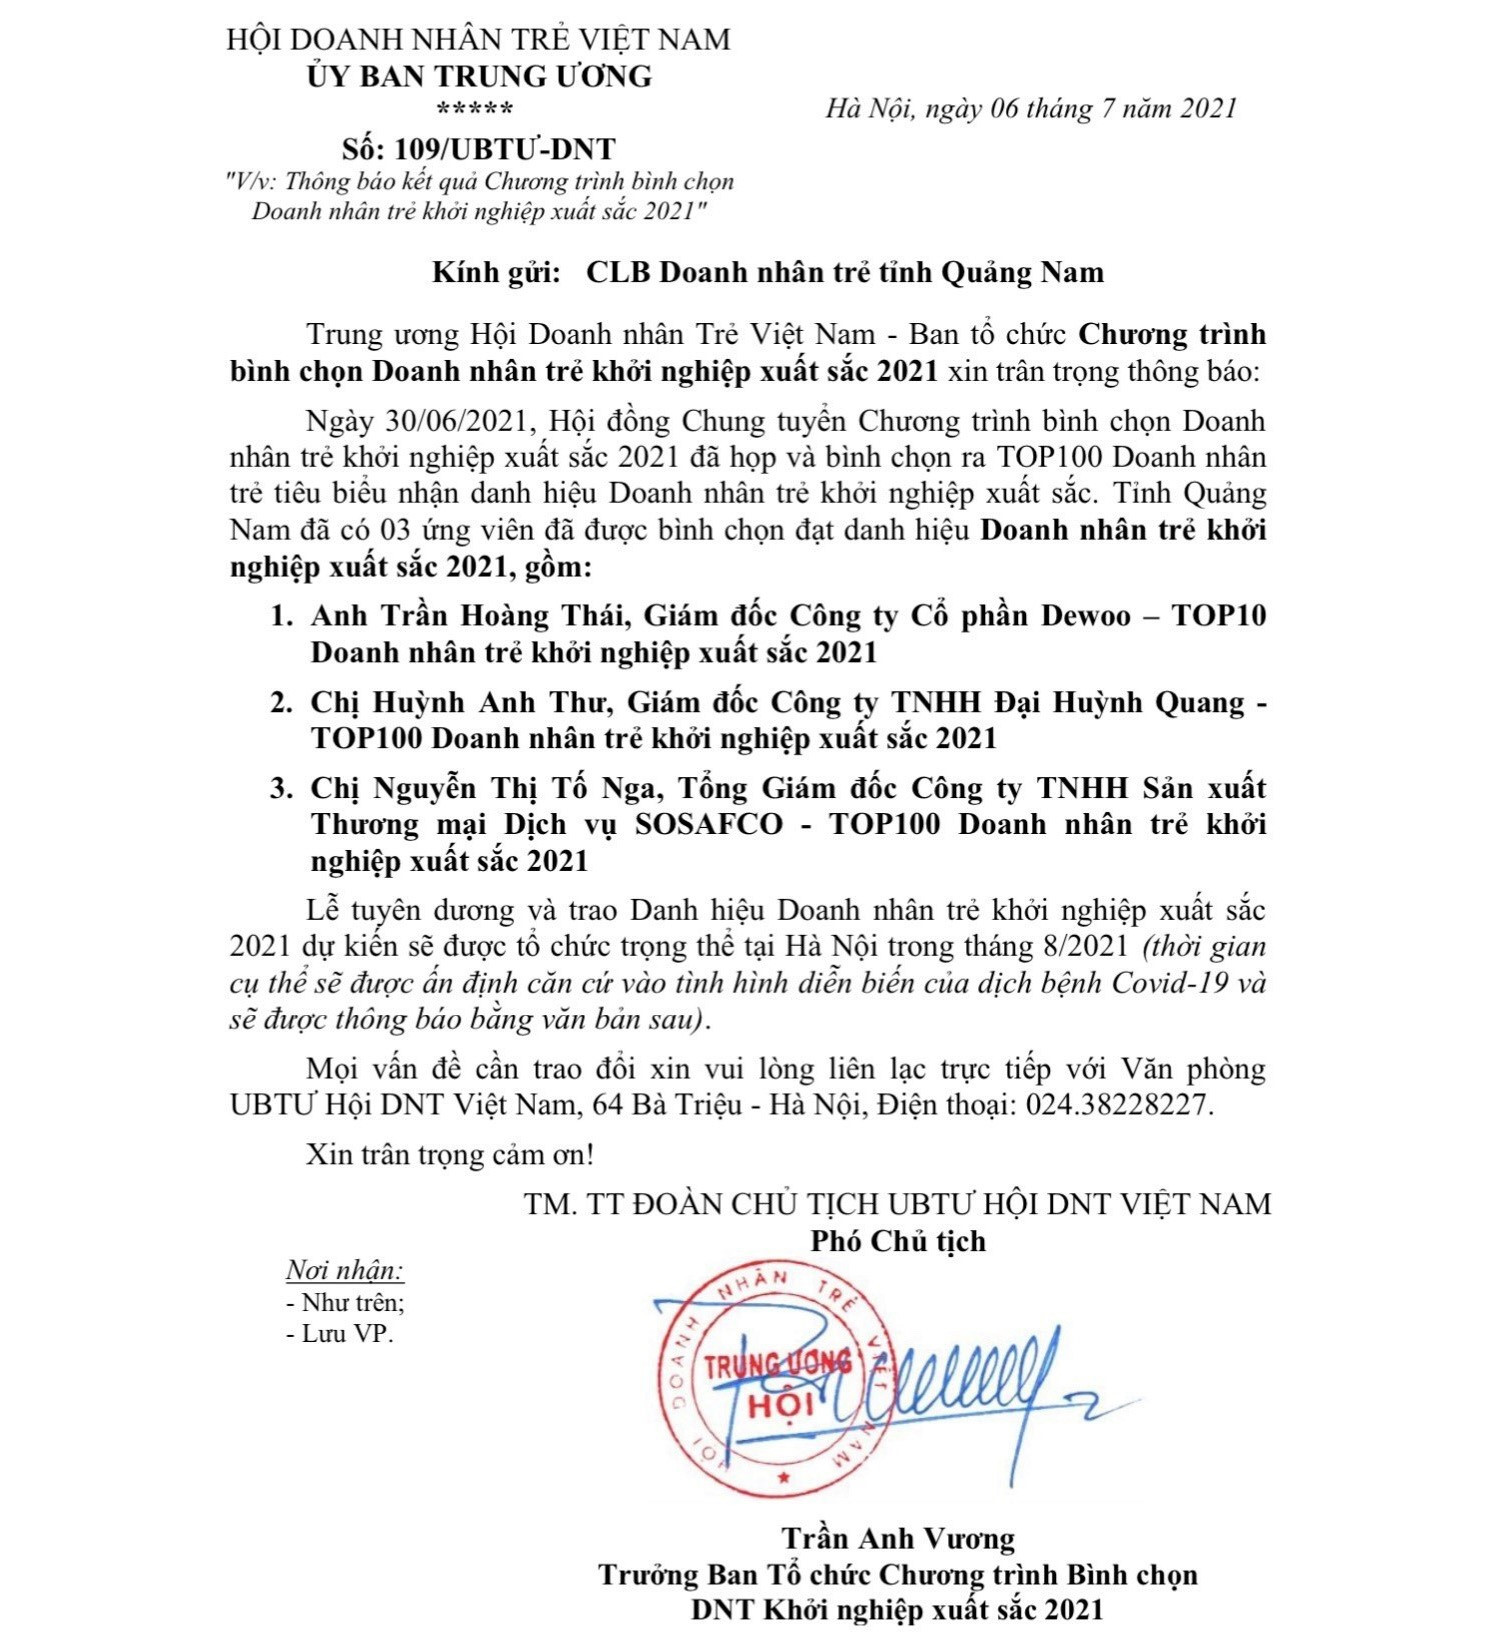 Văn bản thông báo của Trung ương Hội Doanh nhân Trẻ Việt Nam gửi Câu lạc bộ Doanh nhân trẻ Quảng Nam. Ảnh: V.A